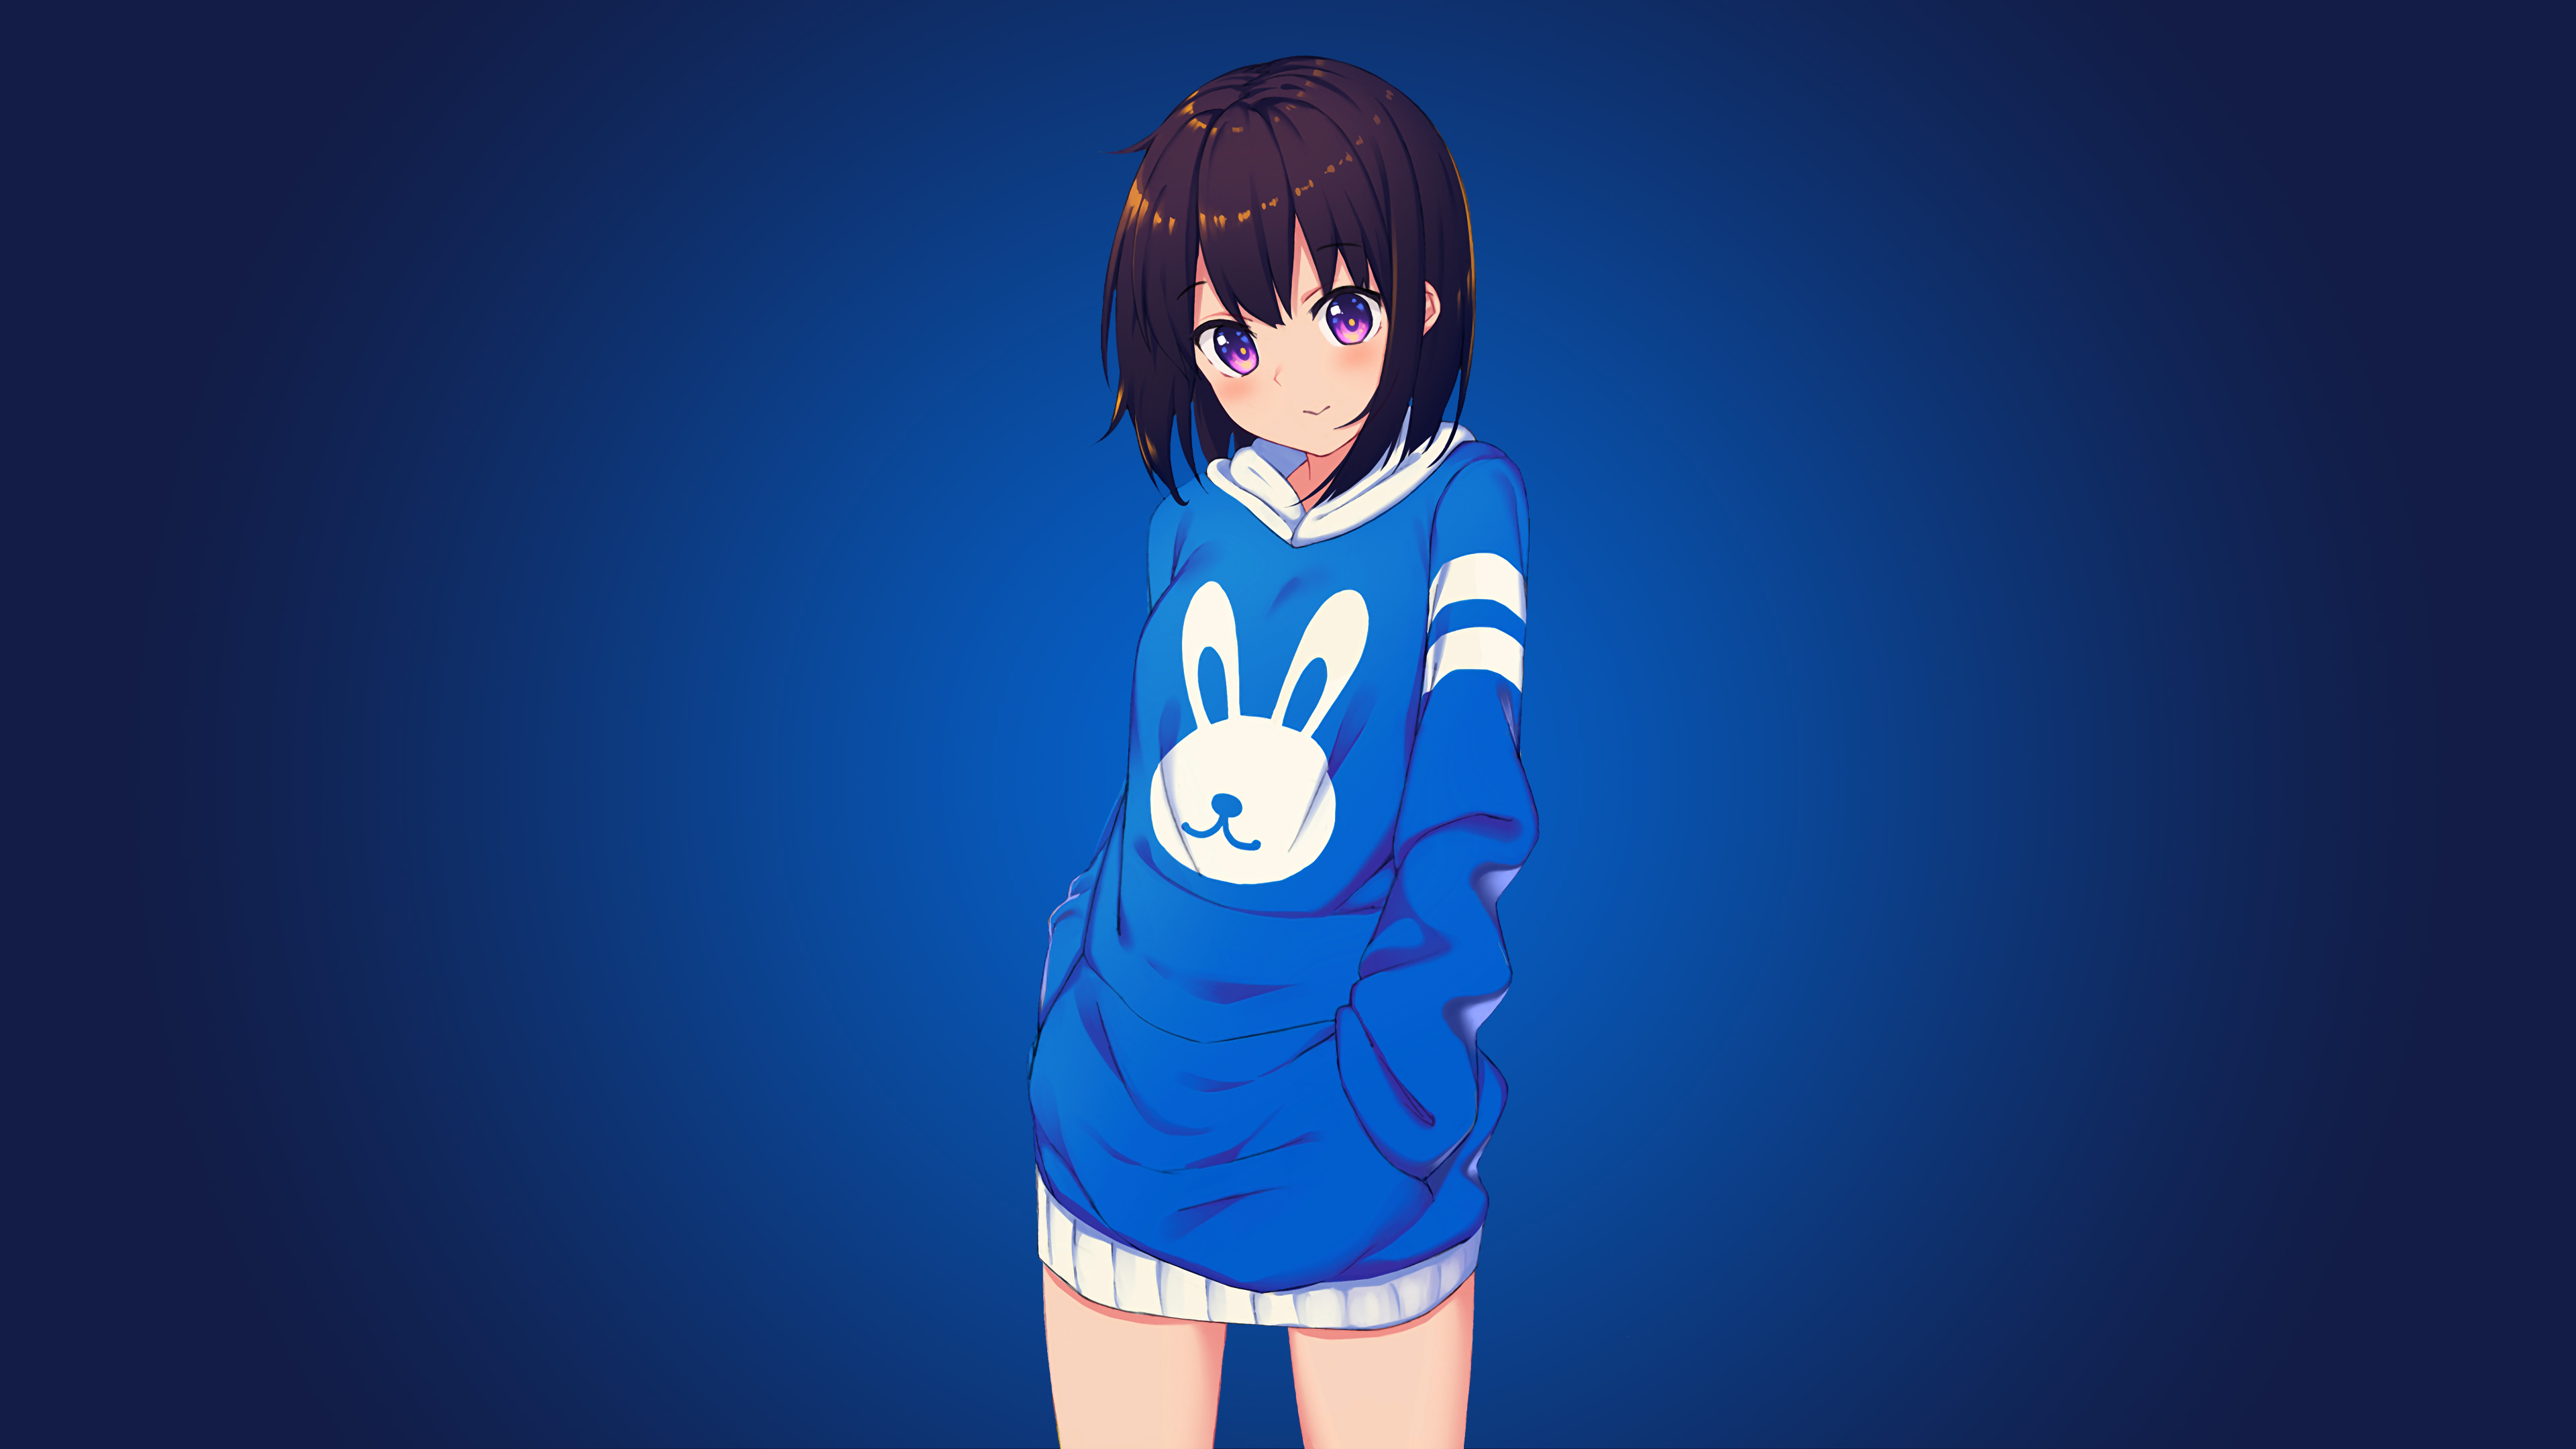 24+] Cute Blue Anime Girl Wallpapers - WallpaperSafari